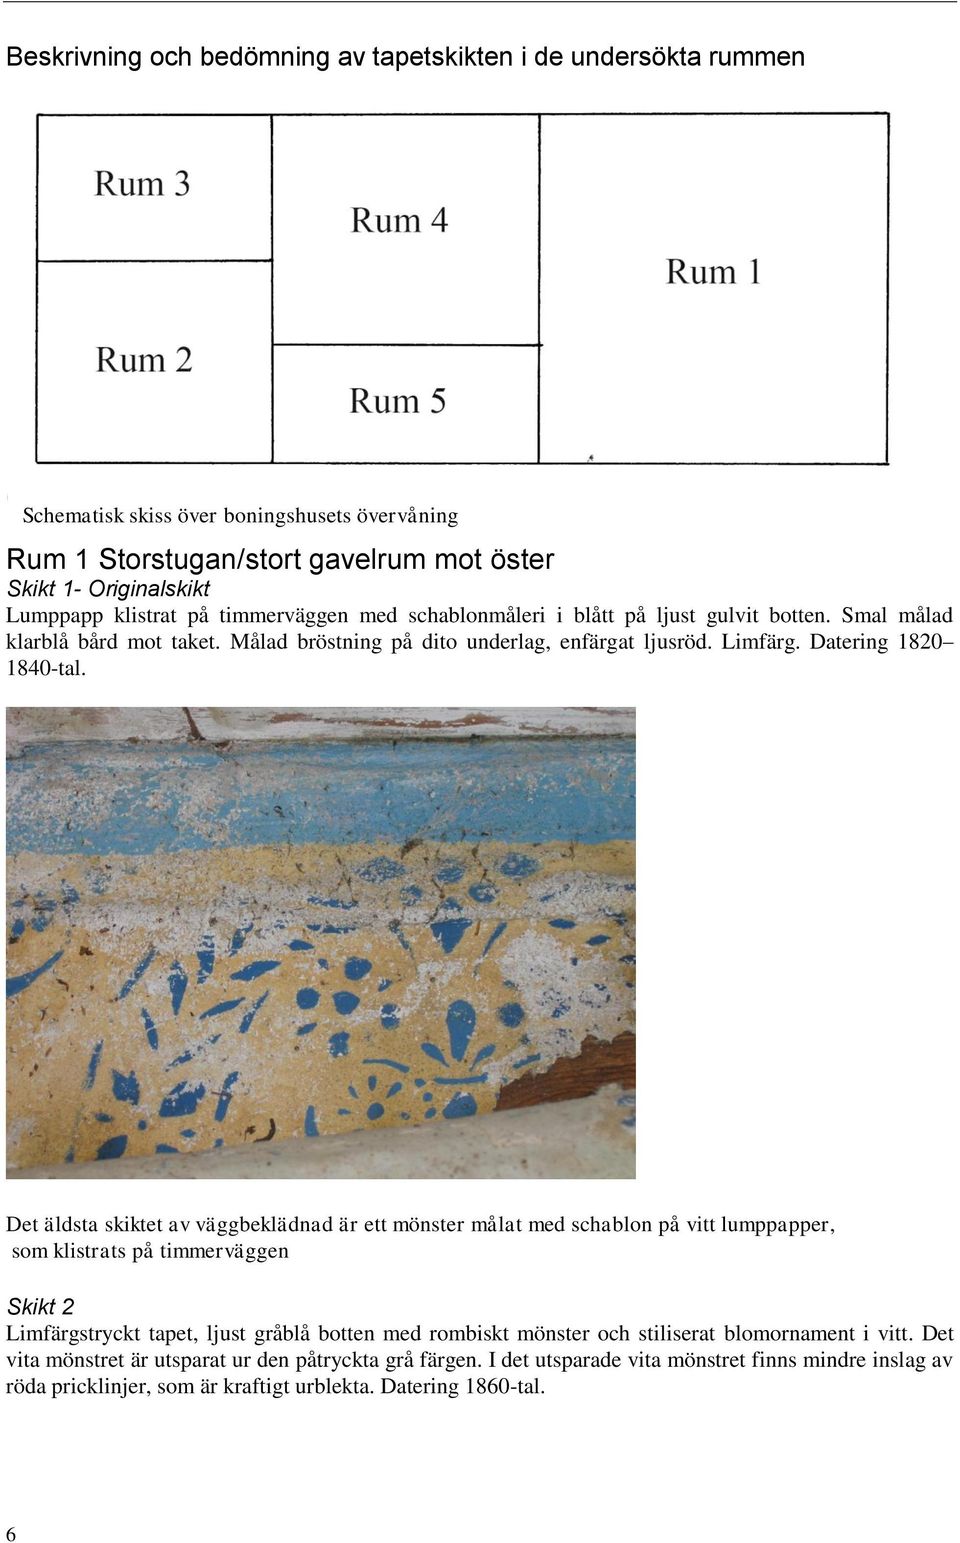 Det äldsta skiktet av väggbeklädnad är ett mönster målat med schablon på vitt lumppapper, som klistrats på timmerväggen Skikt 2 Limfärgstryckt tapet, ljust gråblå botten med rombiskt mönster och